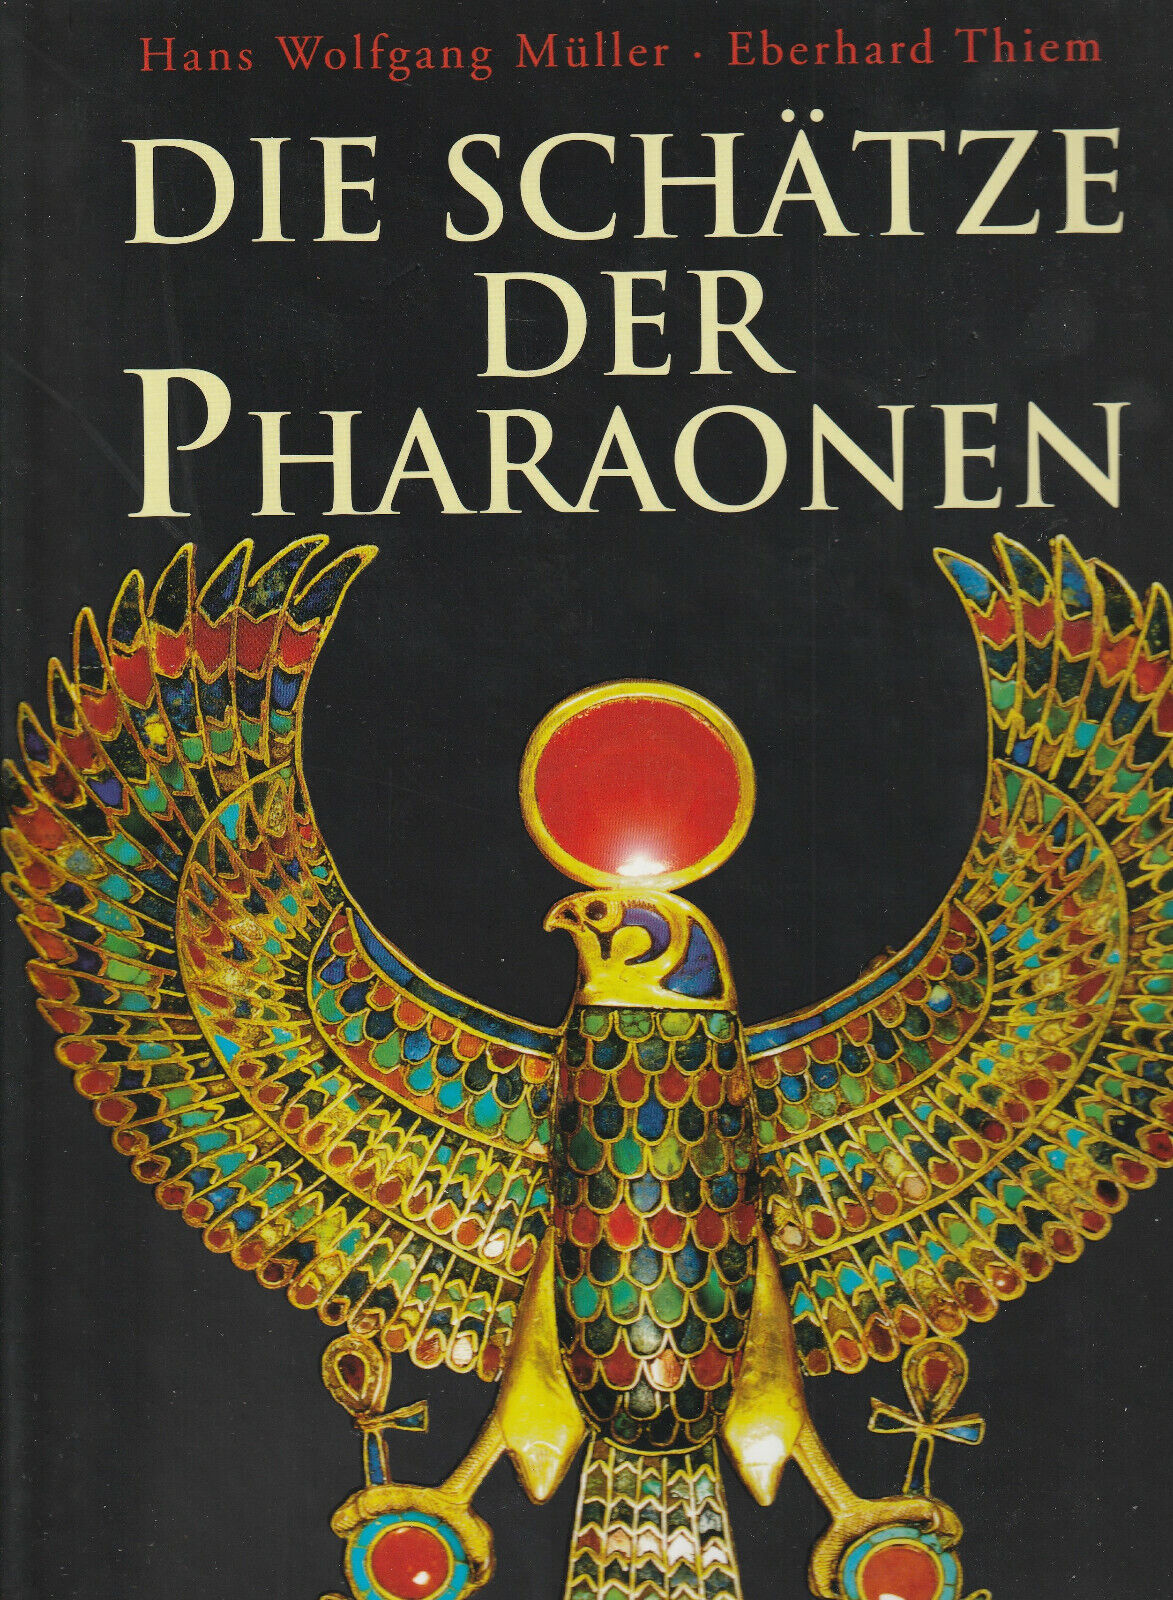 Die Schatze der Pharaonen Hans Wolfgang Muller, Eberhard Thiem